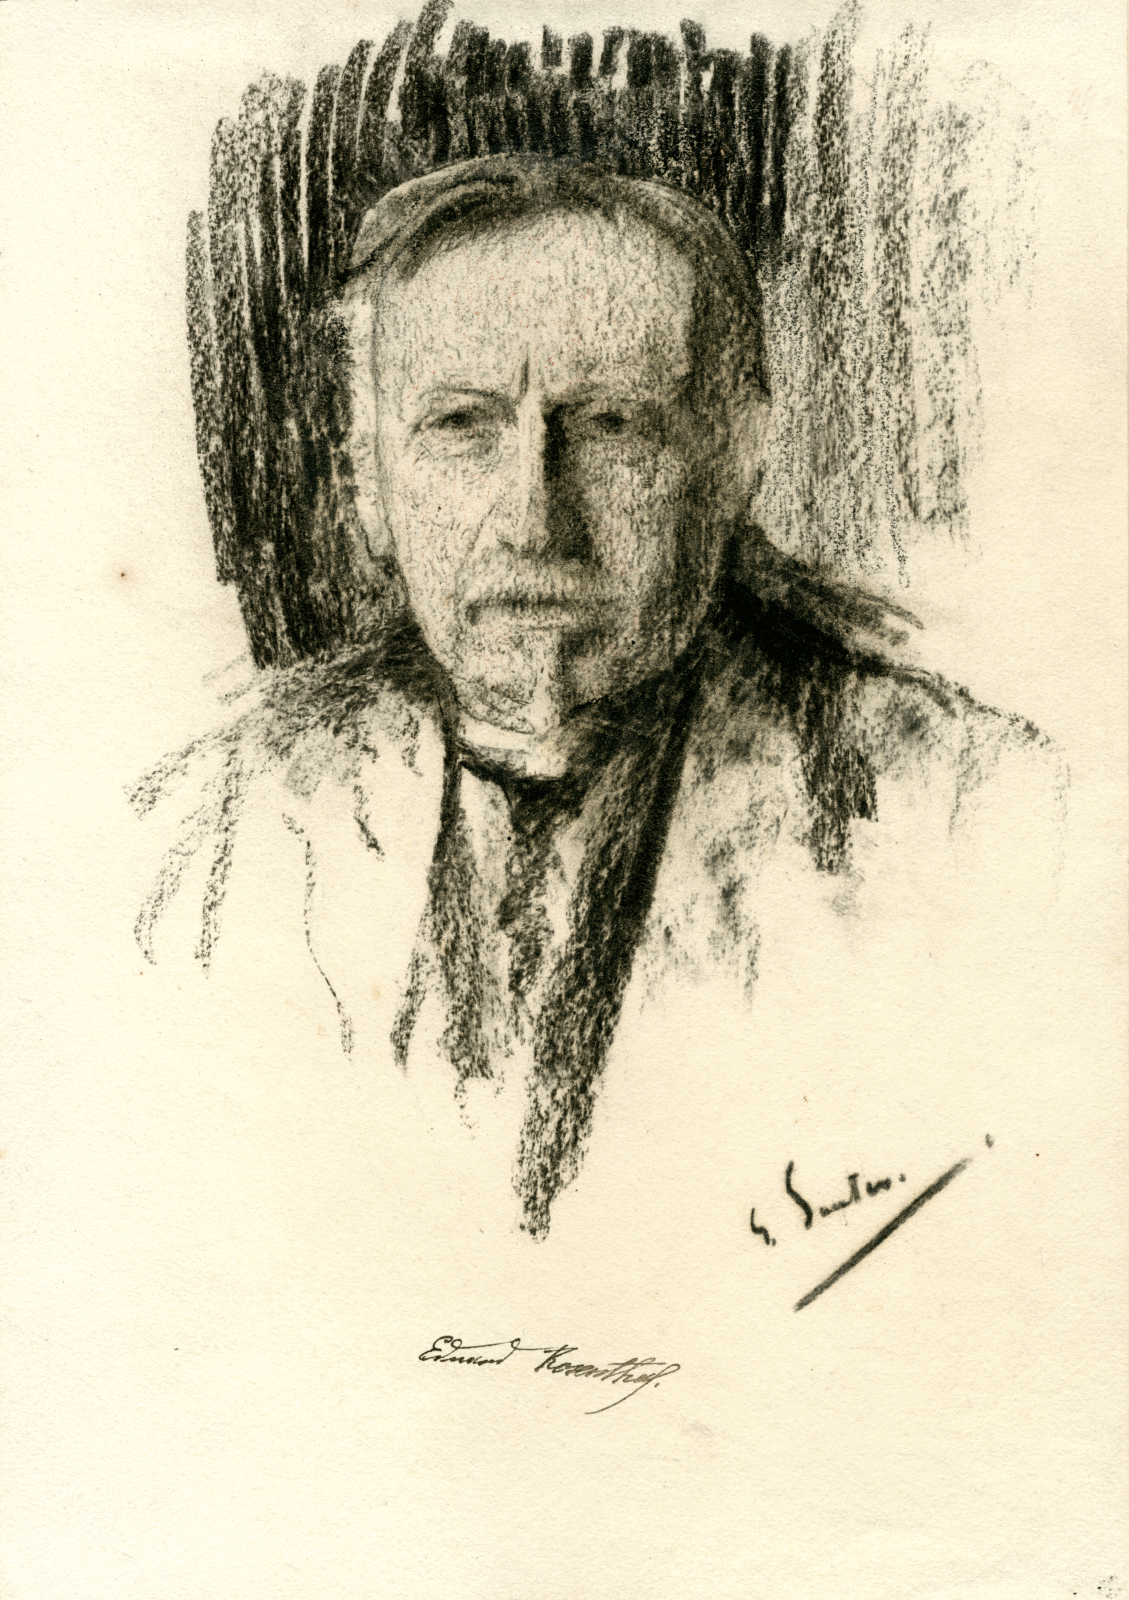 Eine Kohlezeichnung zeigt Eduard Rosenthal in grober Schraffur. Unter dem Bild ist die Signatur des Künstlers und ein Autograph Rosenthals.